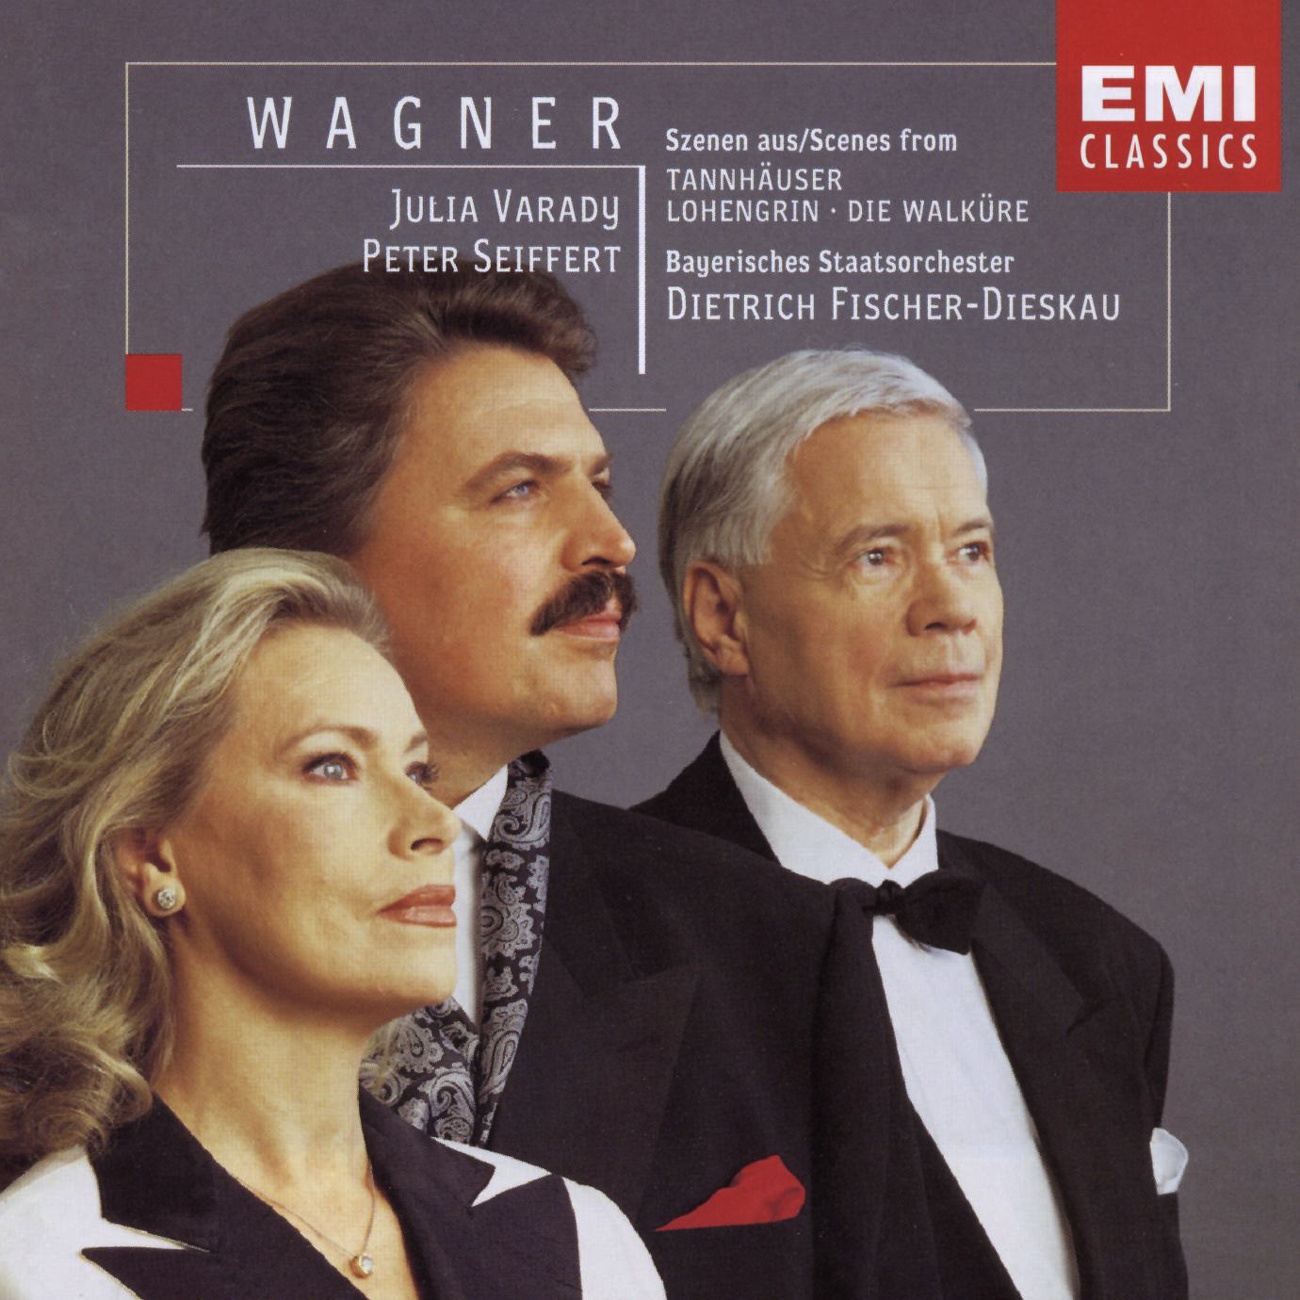 WagnerSzenen, Die Walkü re  Oper in 3 Aufzü gen, Erster Aufzug:  Schl fst du, Gast Sieglinde  Siegmund